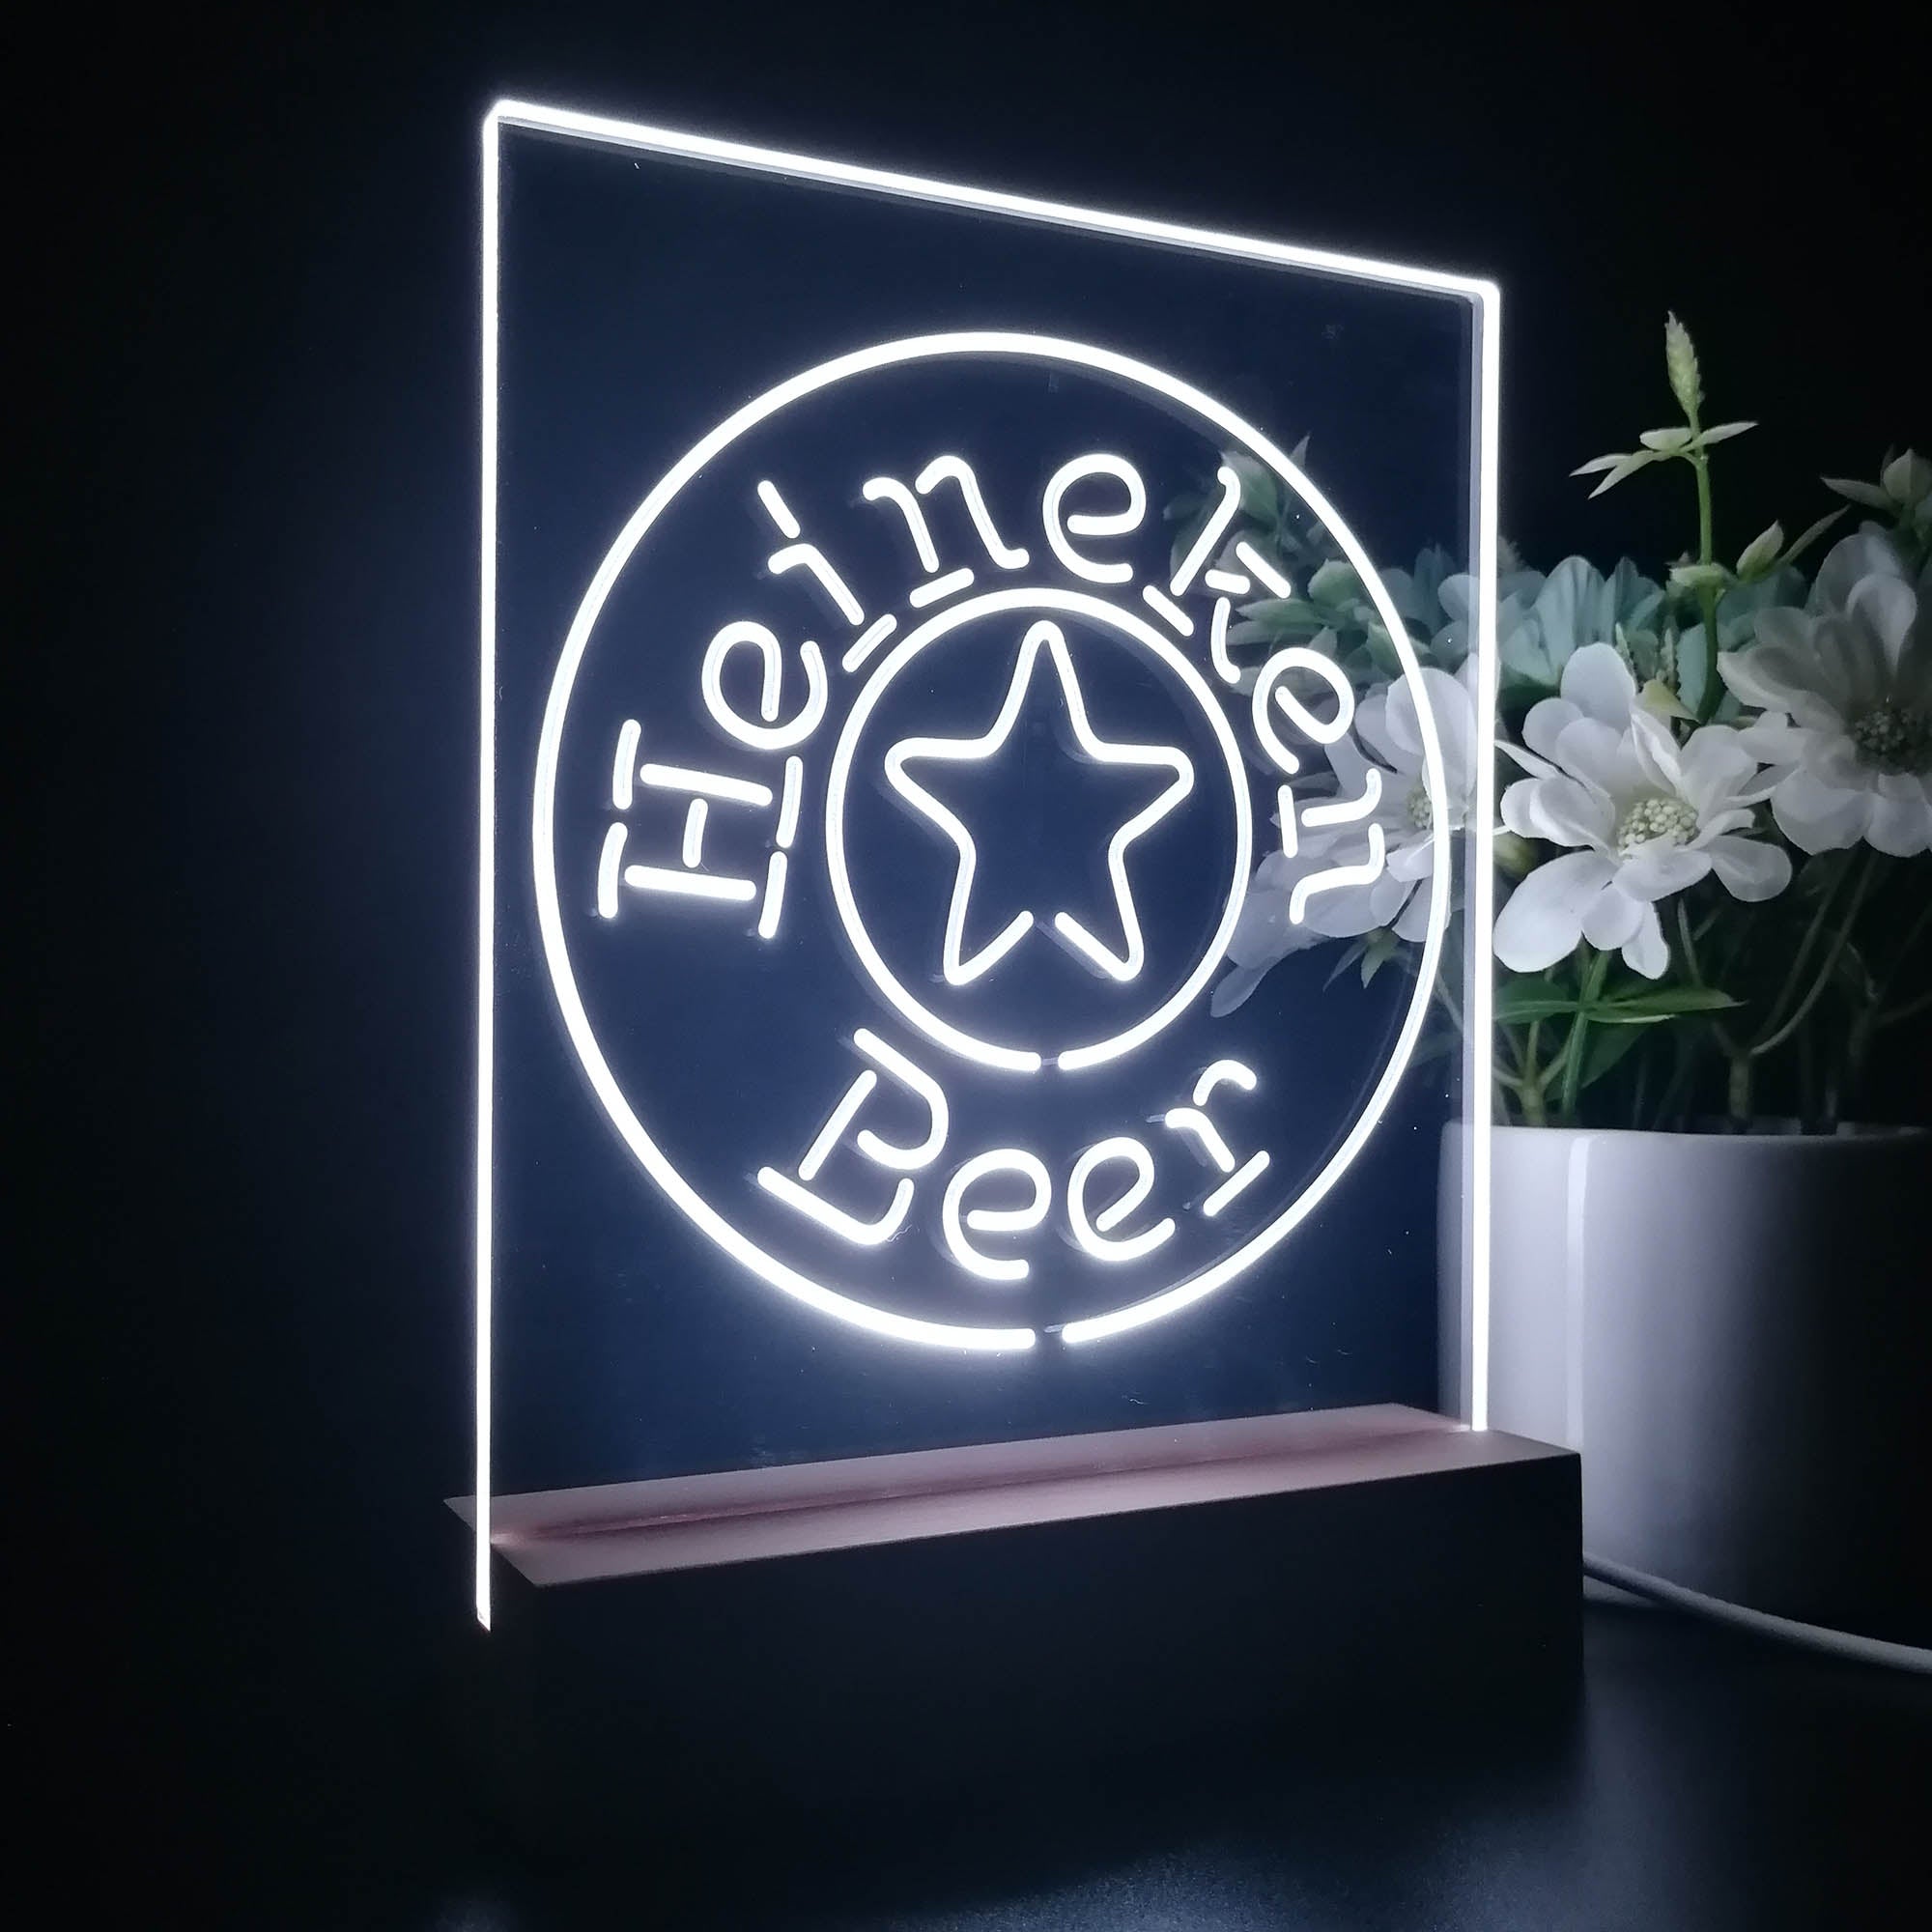 Heineken Beer Night Light LED Sign